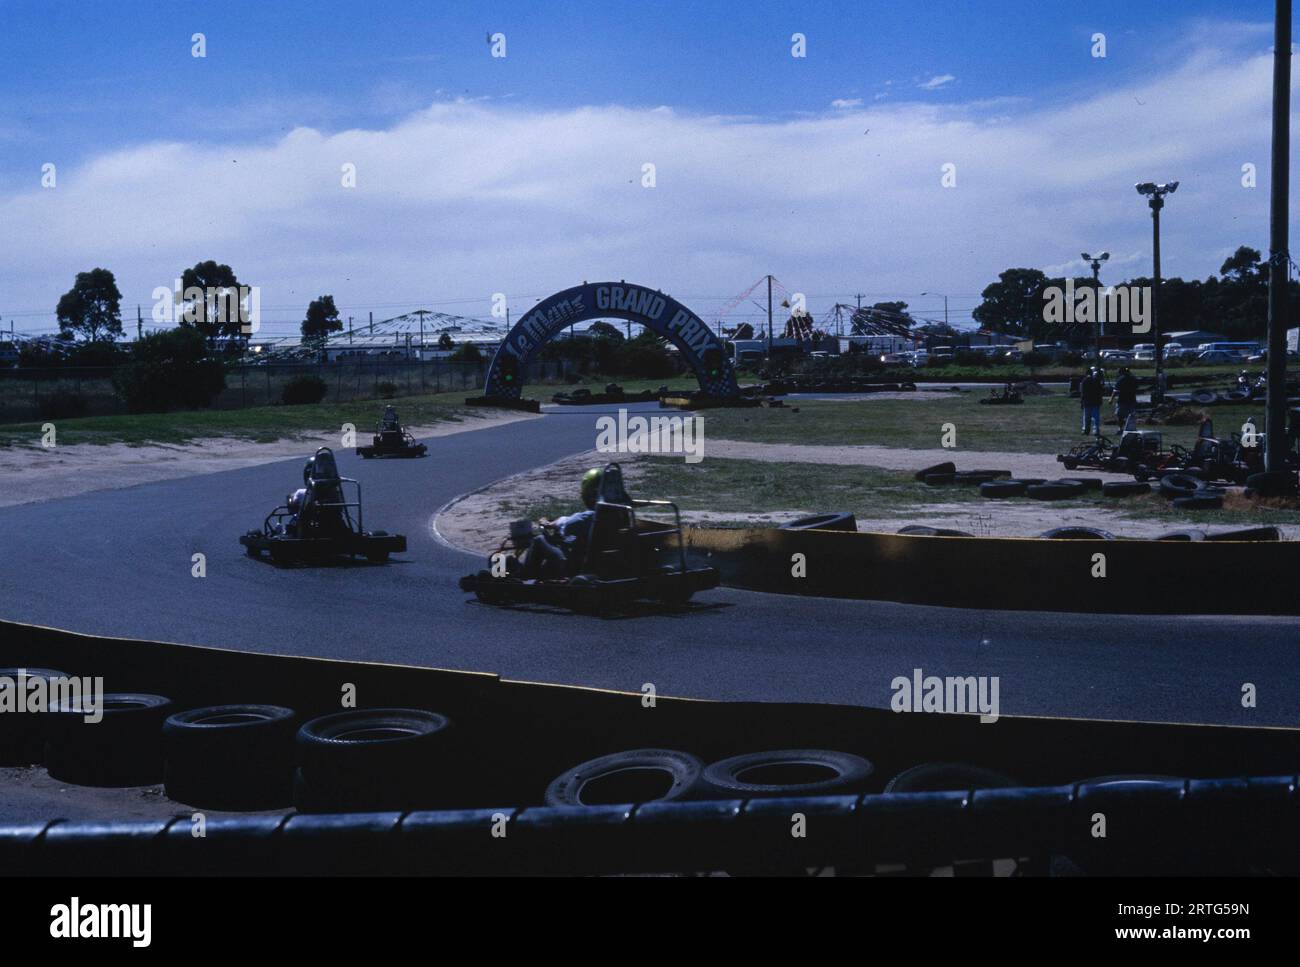 Melbourne, Australie décembre 1999 : capture historique d'une piste de karting animée des années 1990 Banque D'Images